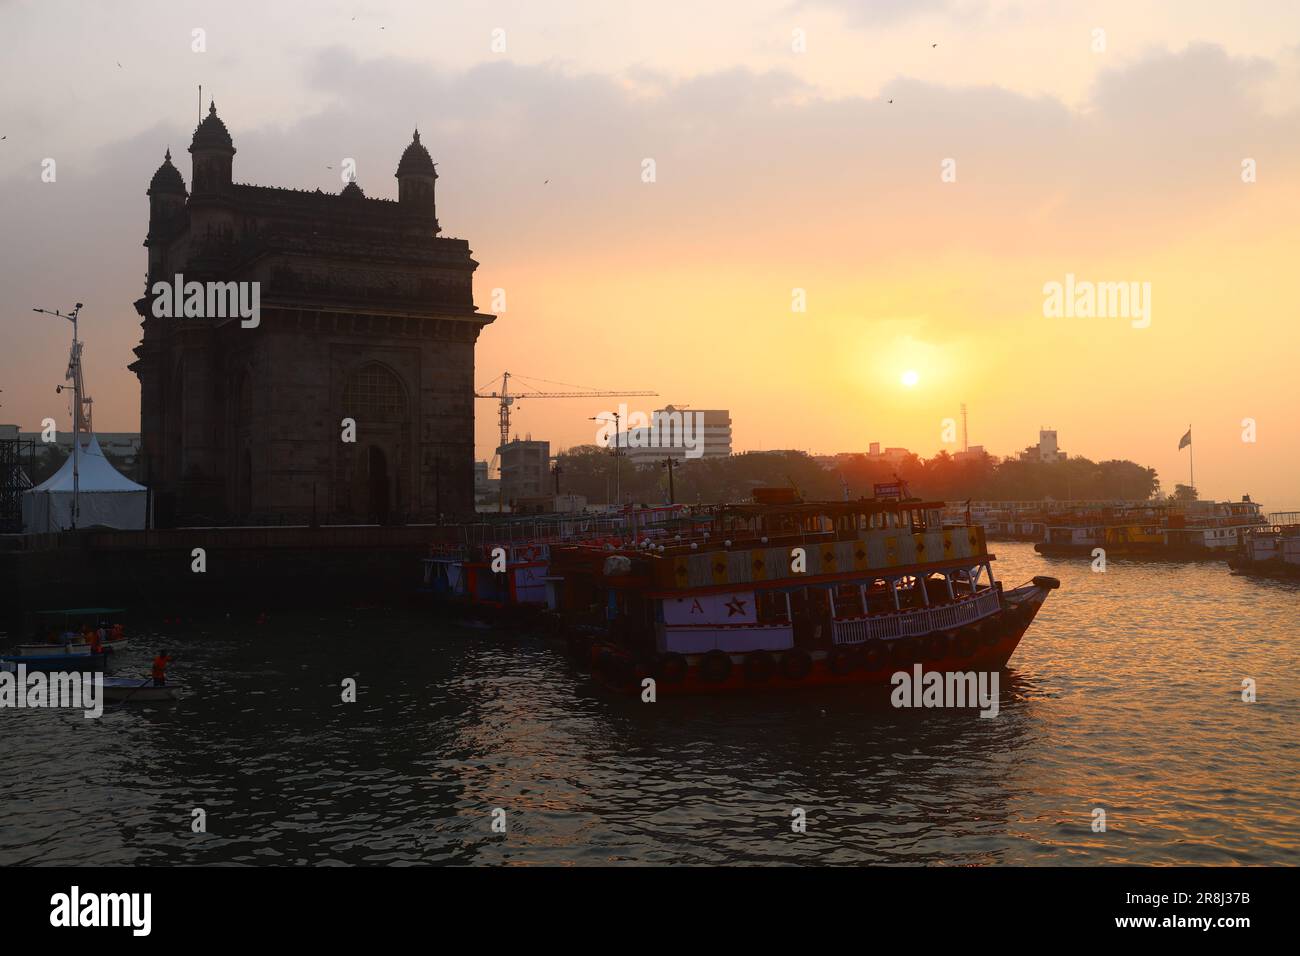 Mumbai (Bombay) - India Stock Photo